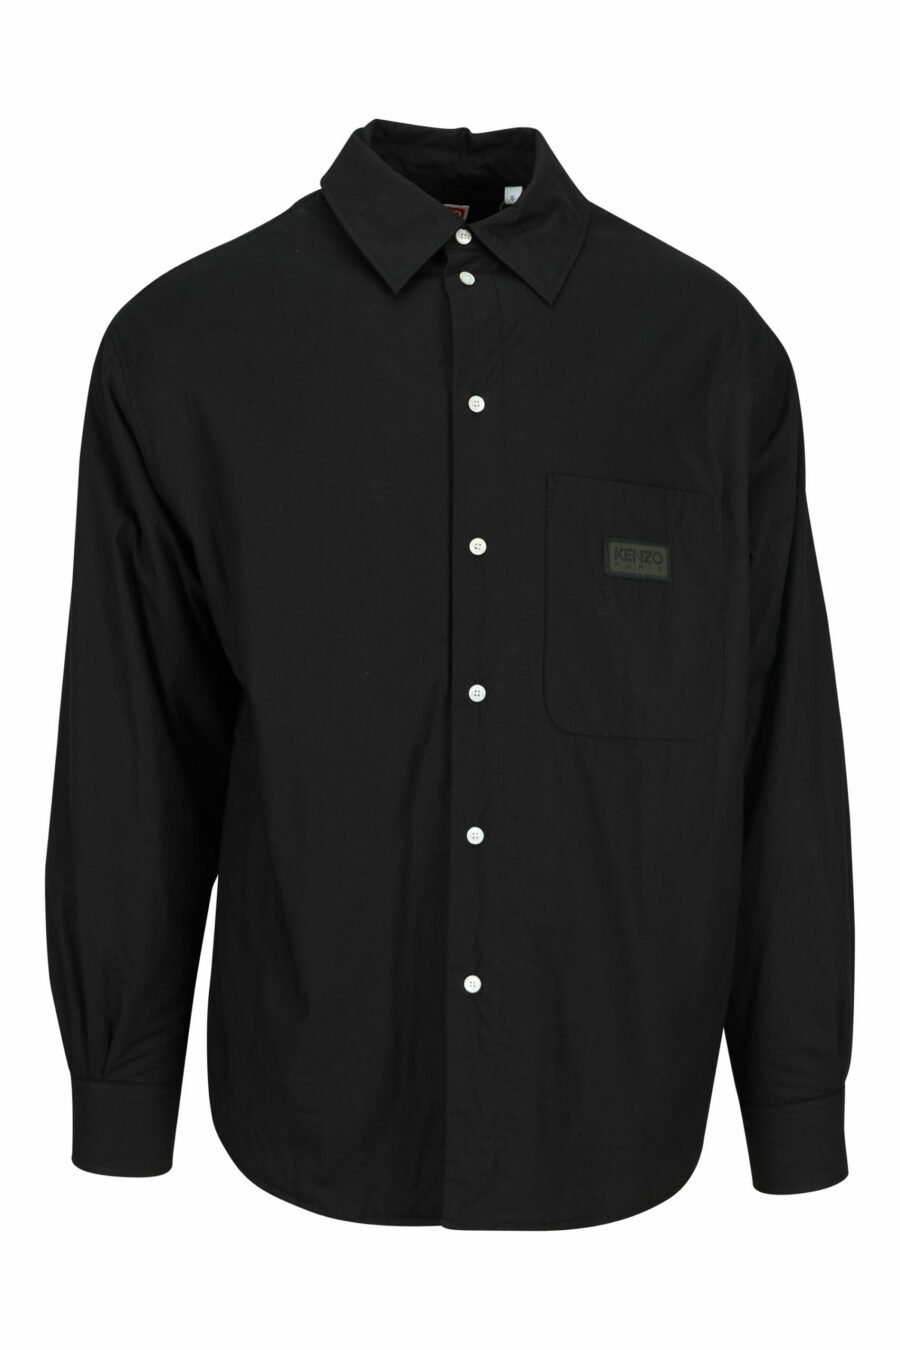 Chemise oversize noire avec logo "kenzo tag" - 3612230585003 scaled